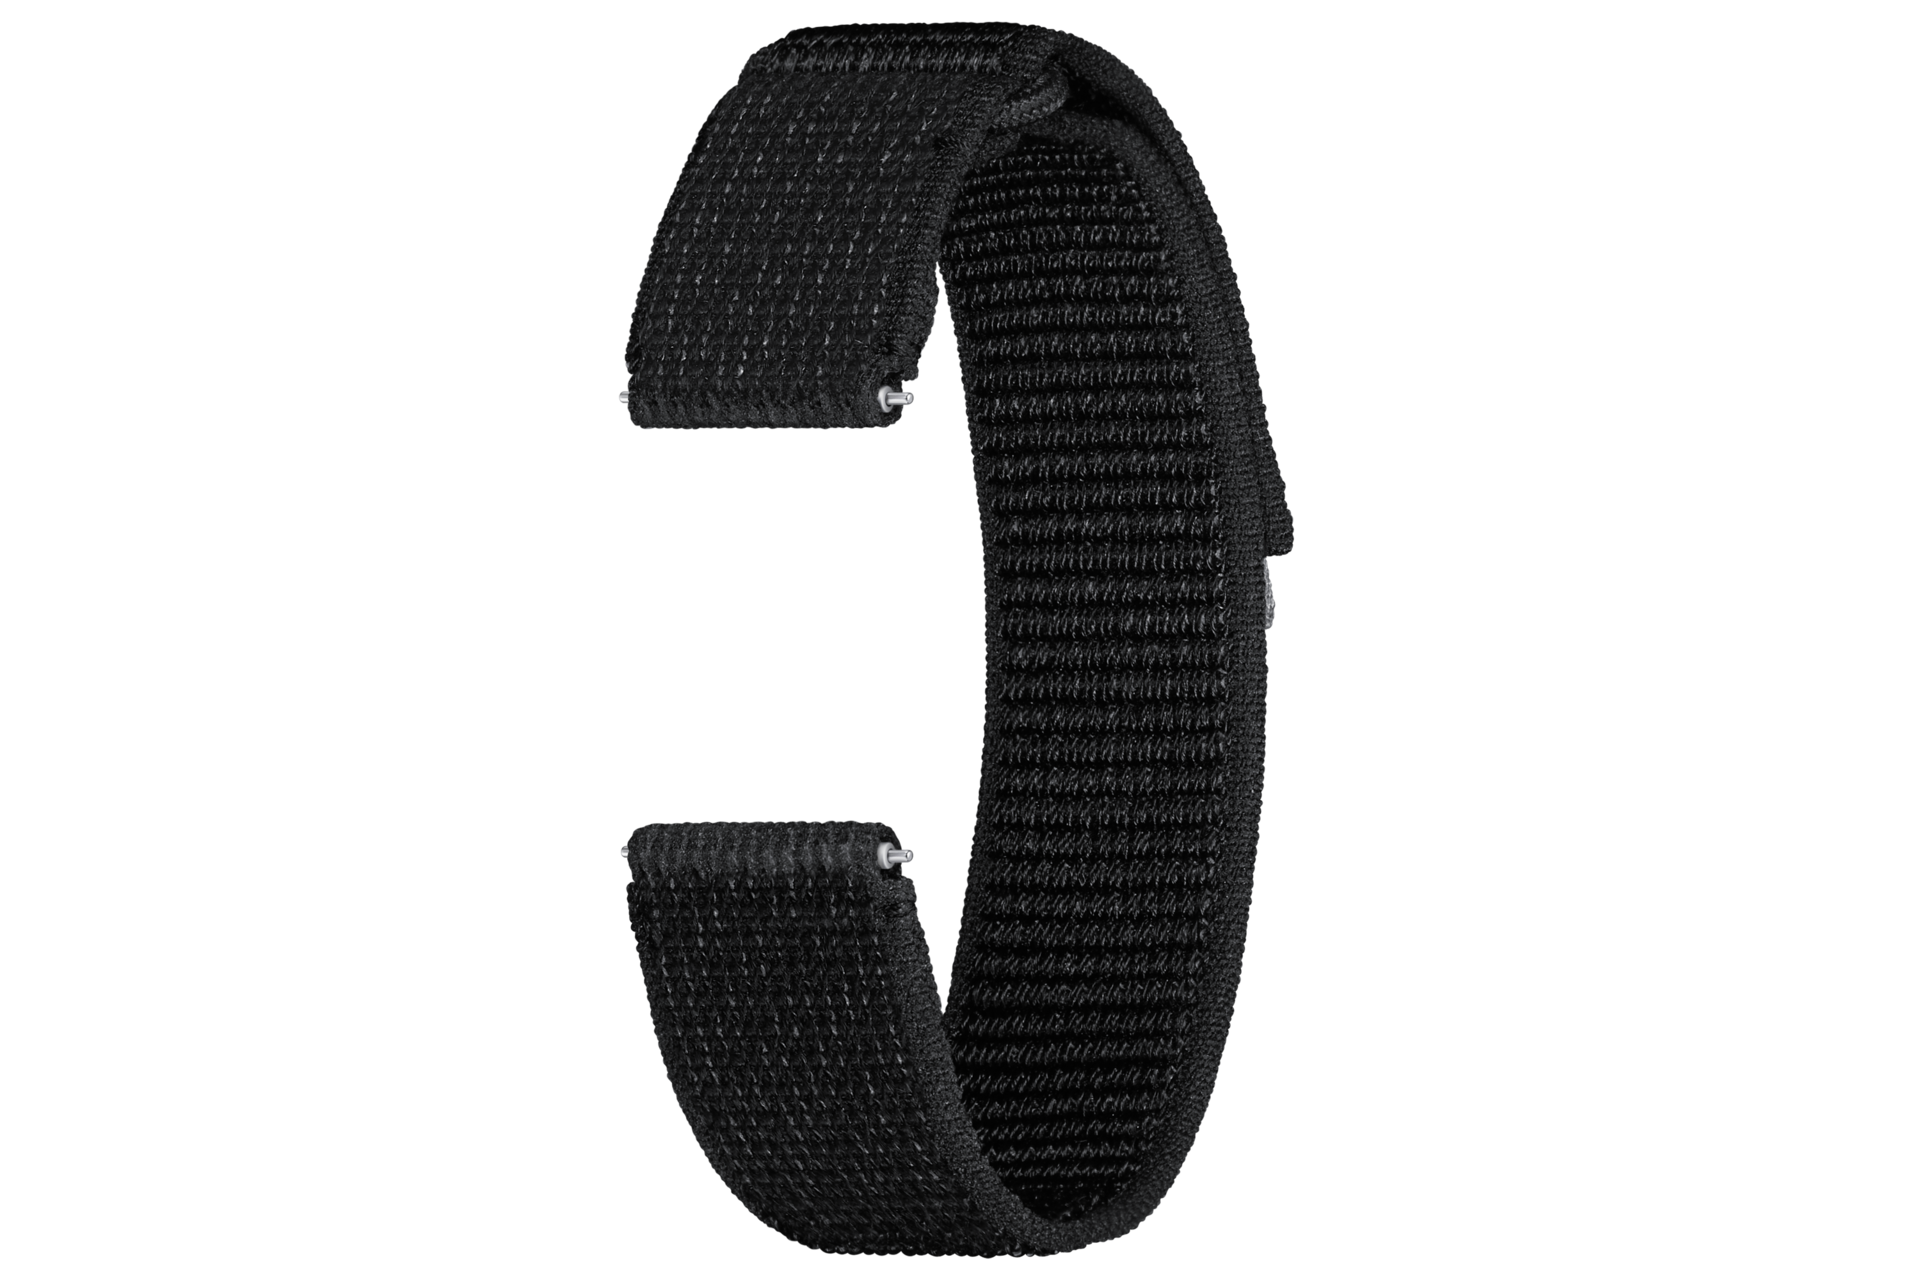 Samsung Smartwatch Fabric Band Black ET-SVR94LBEGWW UPC 8806095086408 - ET-SVR94LBEGWW